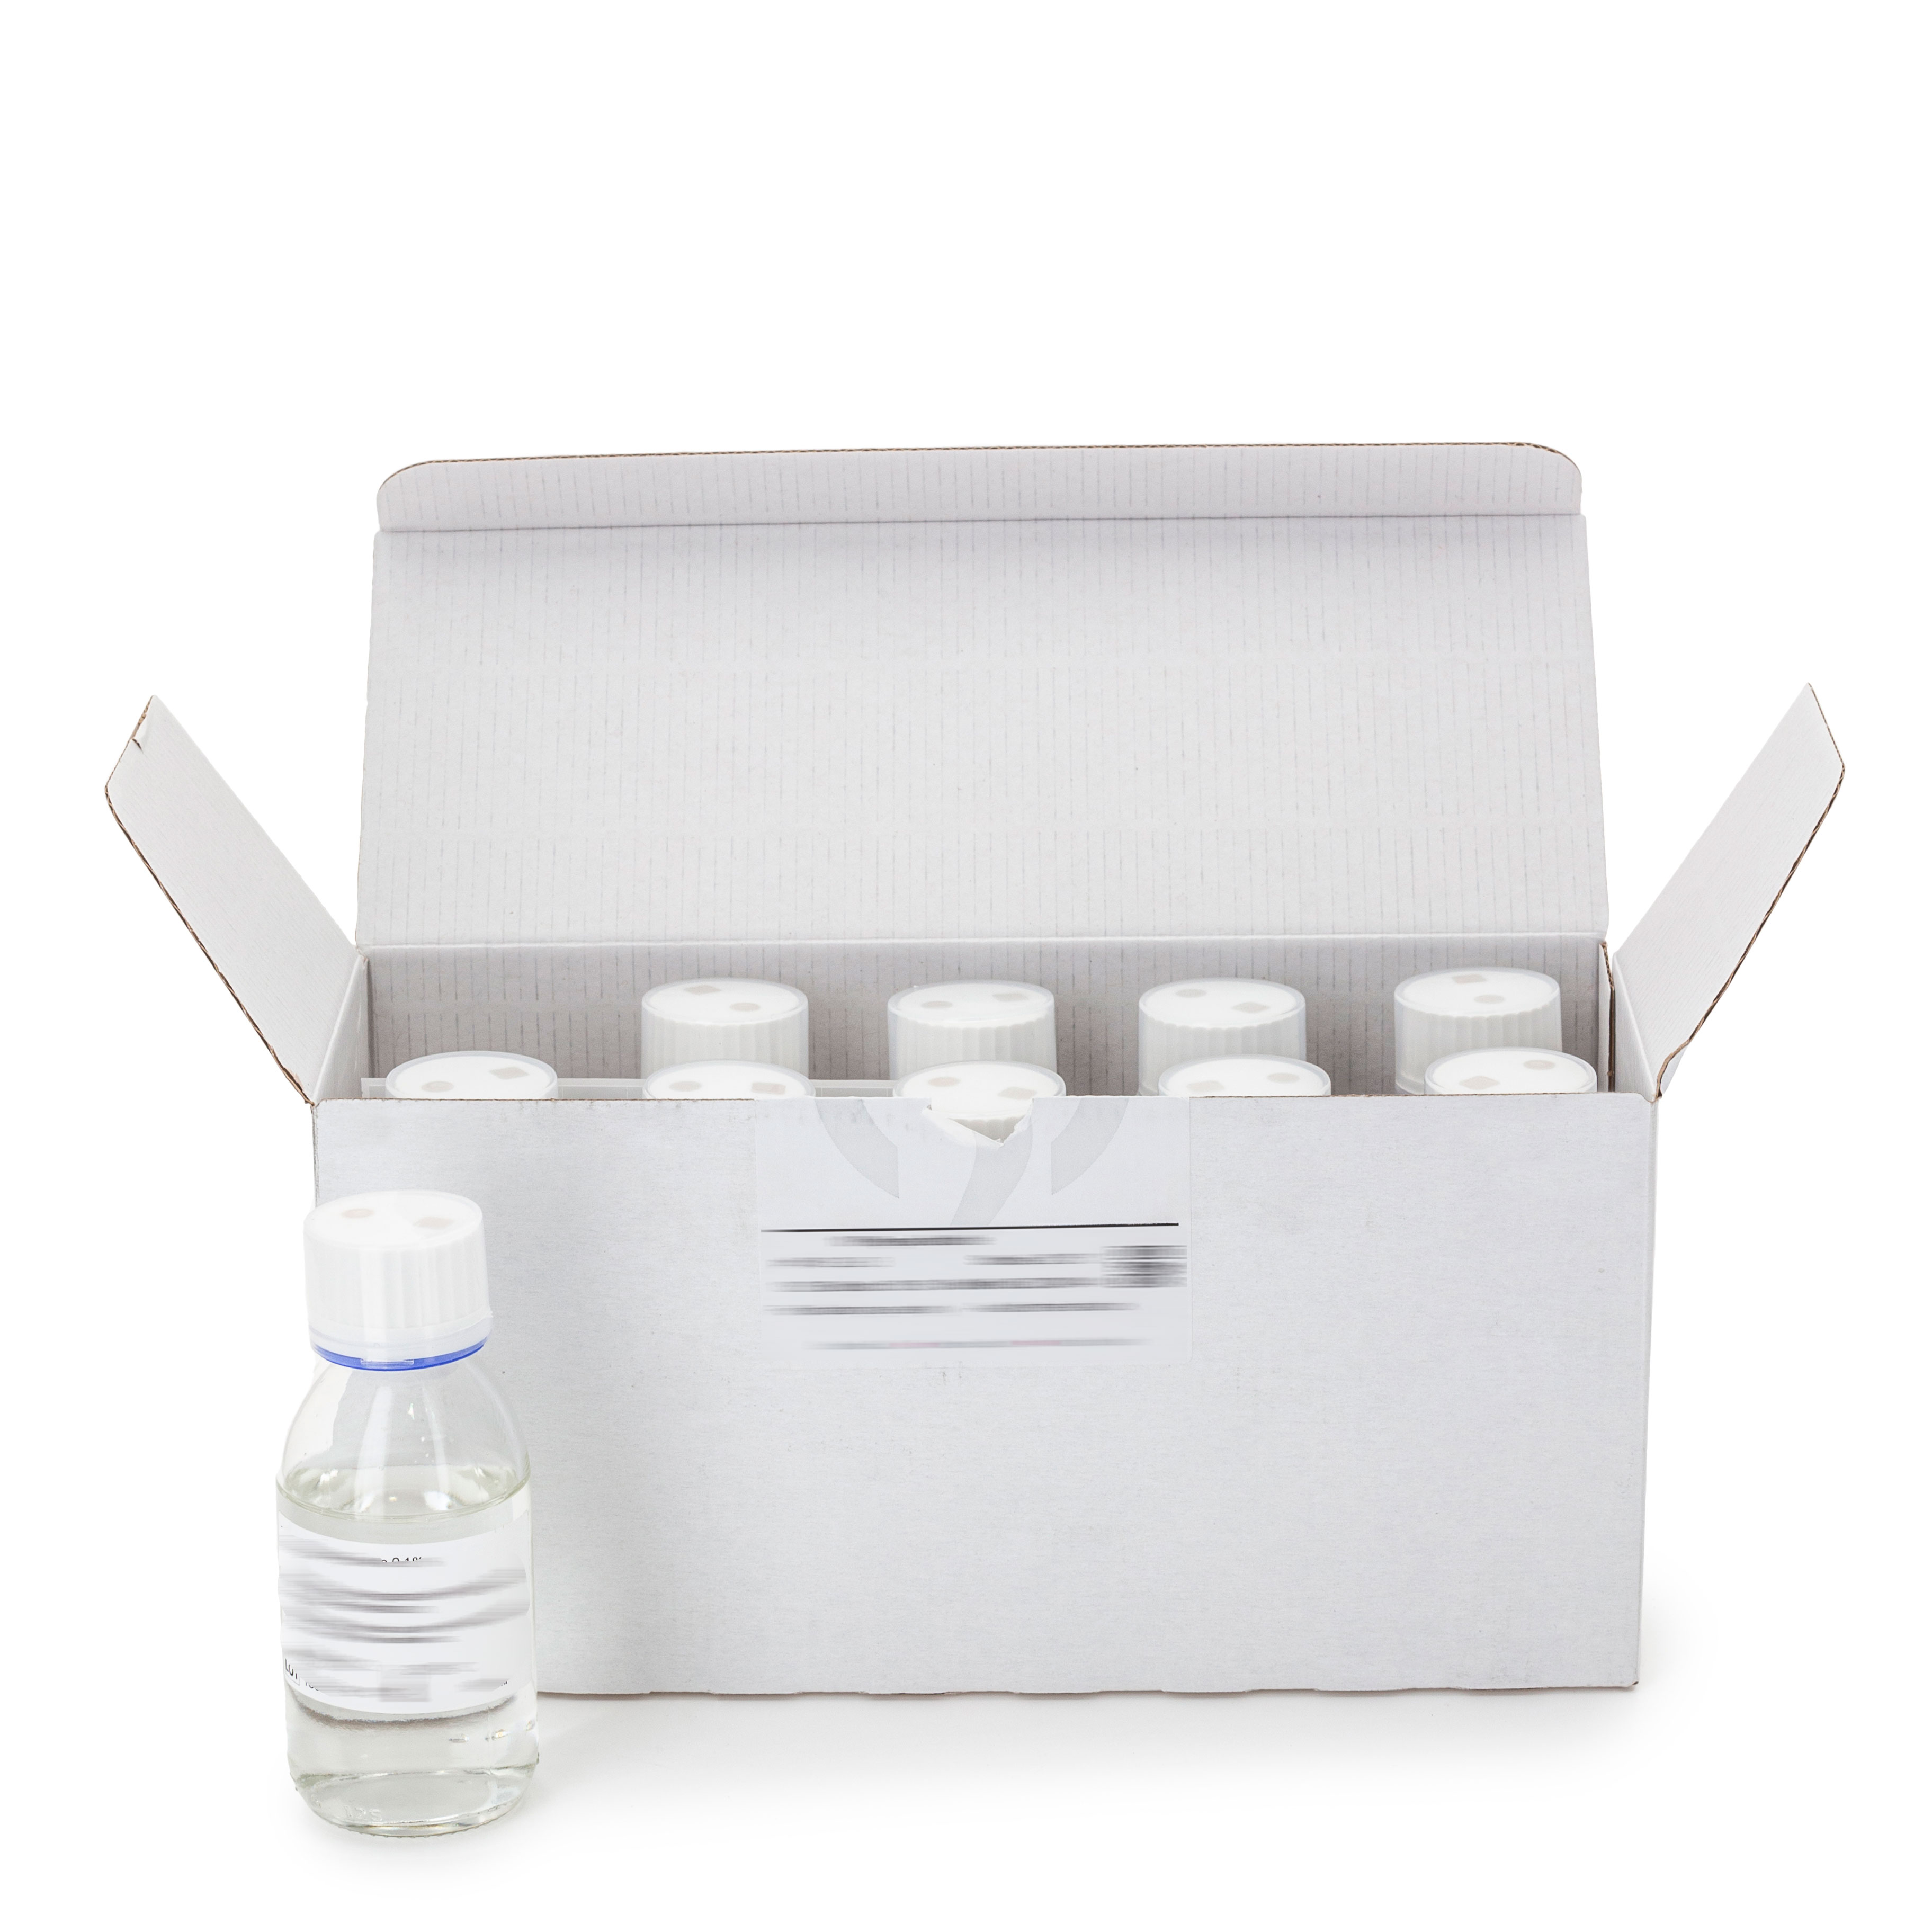 Medio sólido selectivo para el aislamiento y enumeración de hongos en leche y derivados lácticos de acuerdo a la norma ISO 7954 y a la norma FIL-IDF 94B.1 caja con 10 botellas 250 ml. tapón metálico- no pinchable.